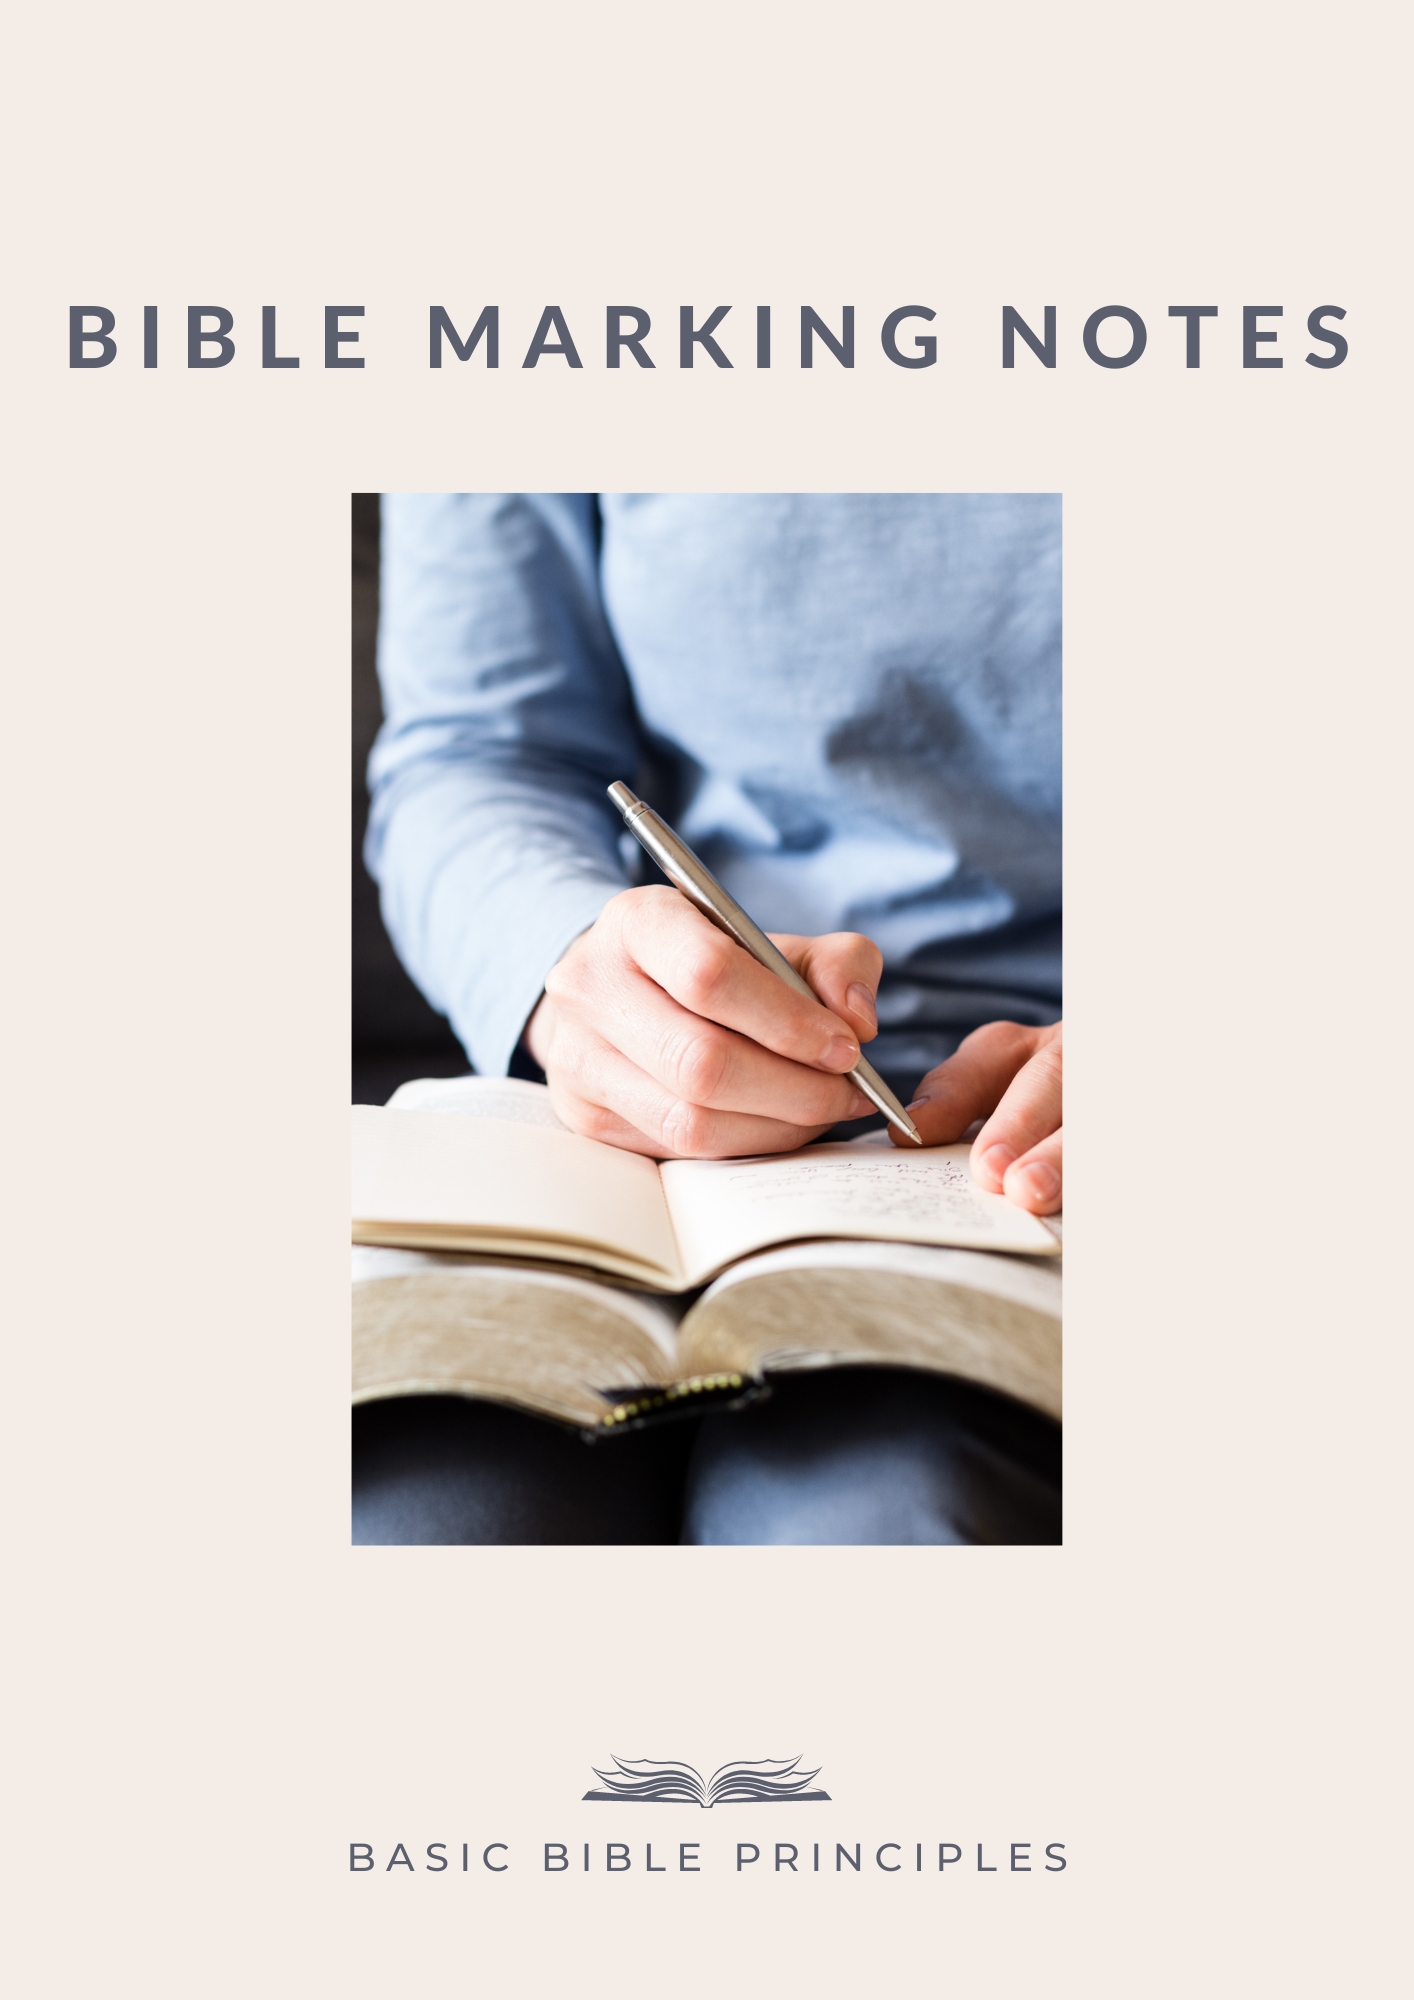 Basic Bible Principles - Bible Marking Notes.